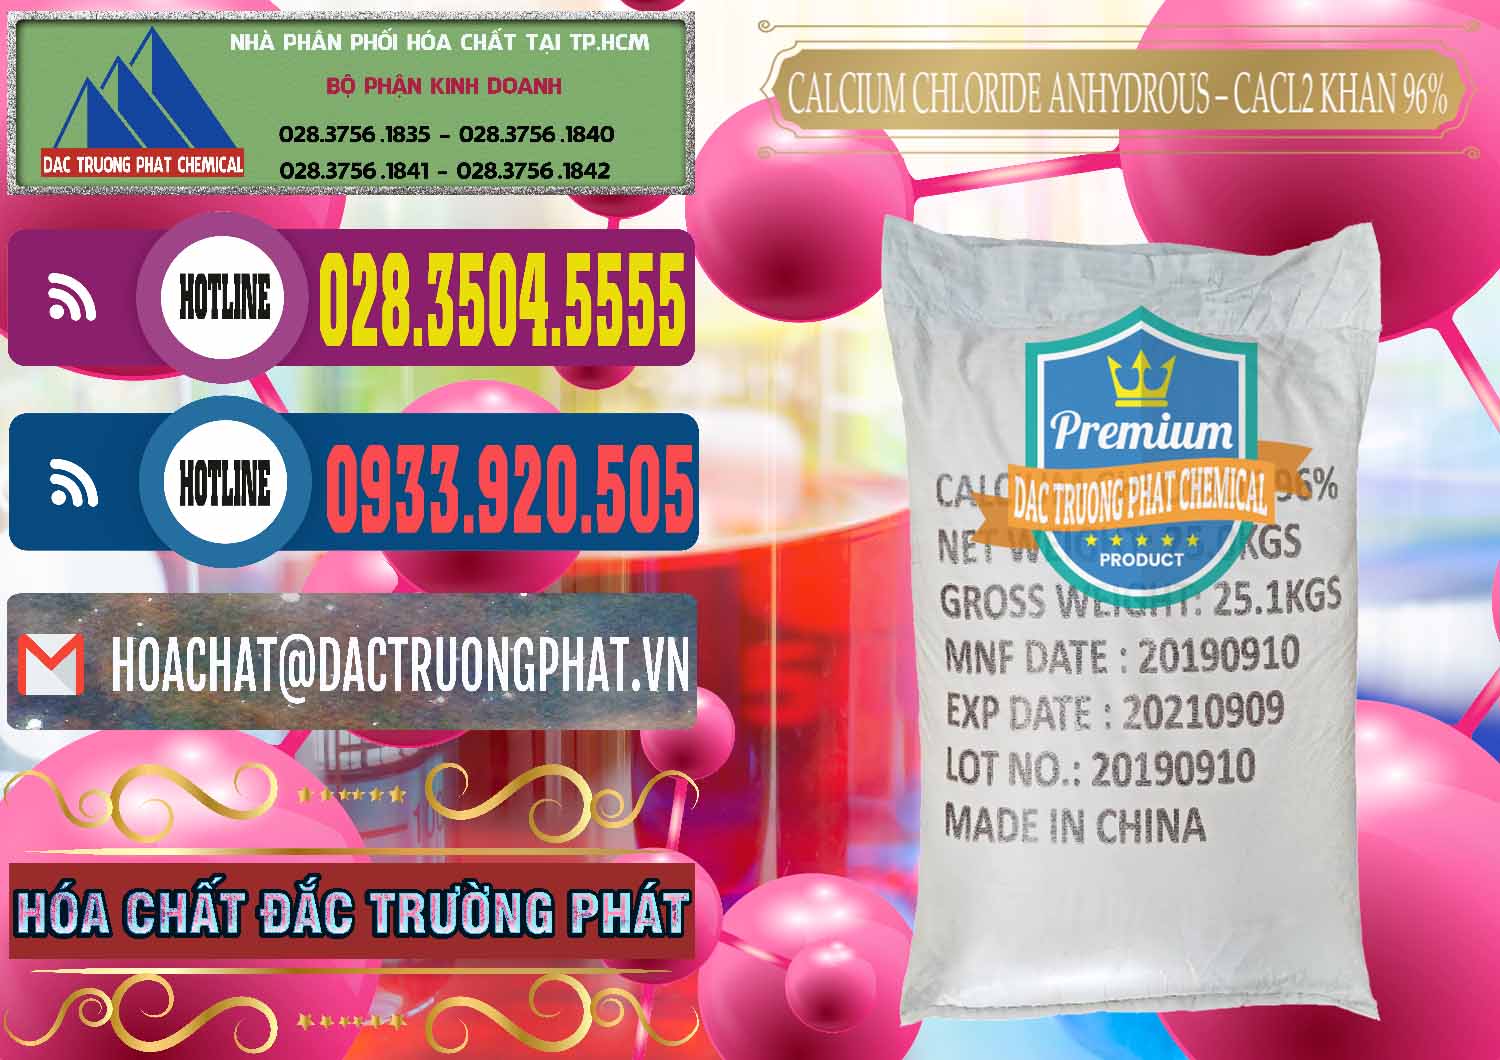 Nơi cung cấp - bán CaCl2 – Canxi Clorua Anhydrous Khan 96% Trung Quốc China - 0043 - Nơi chuyên cung cấp ( bán ) hóa chất tại TP.HCM - muabanhoachat.com.vn